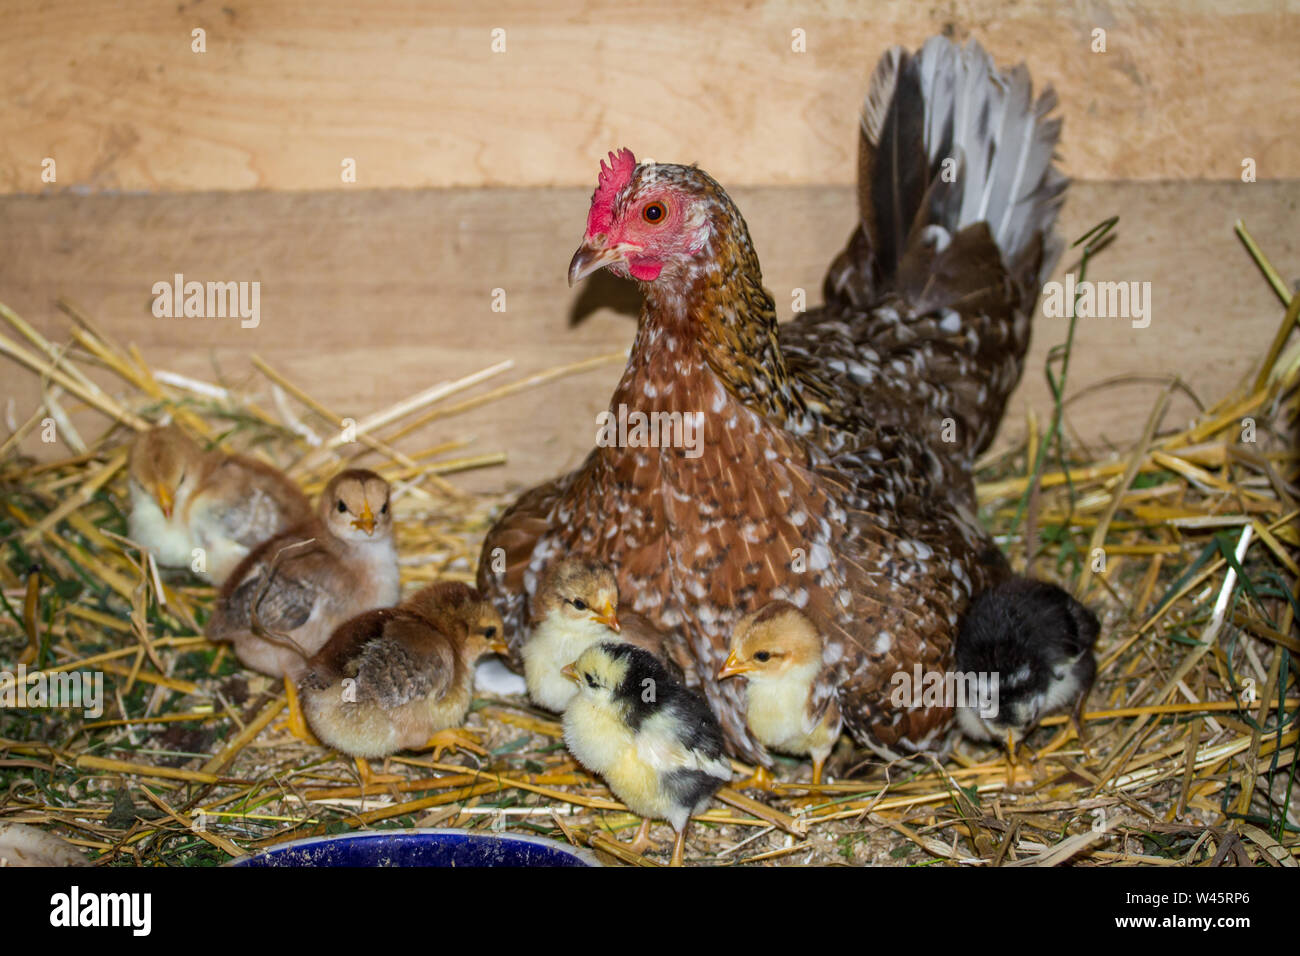 Henne und Ihr flügge der Rasse Stoapiperl/Steinhendl, einer vom Aussterben bedrohten Rasse Huhn aus Österreich Stockfoto